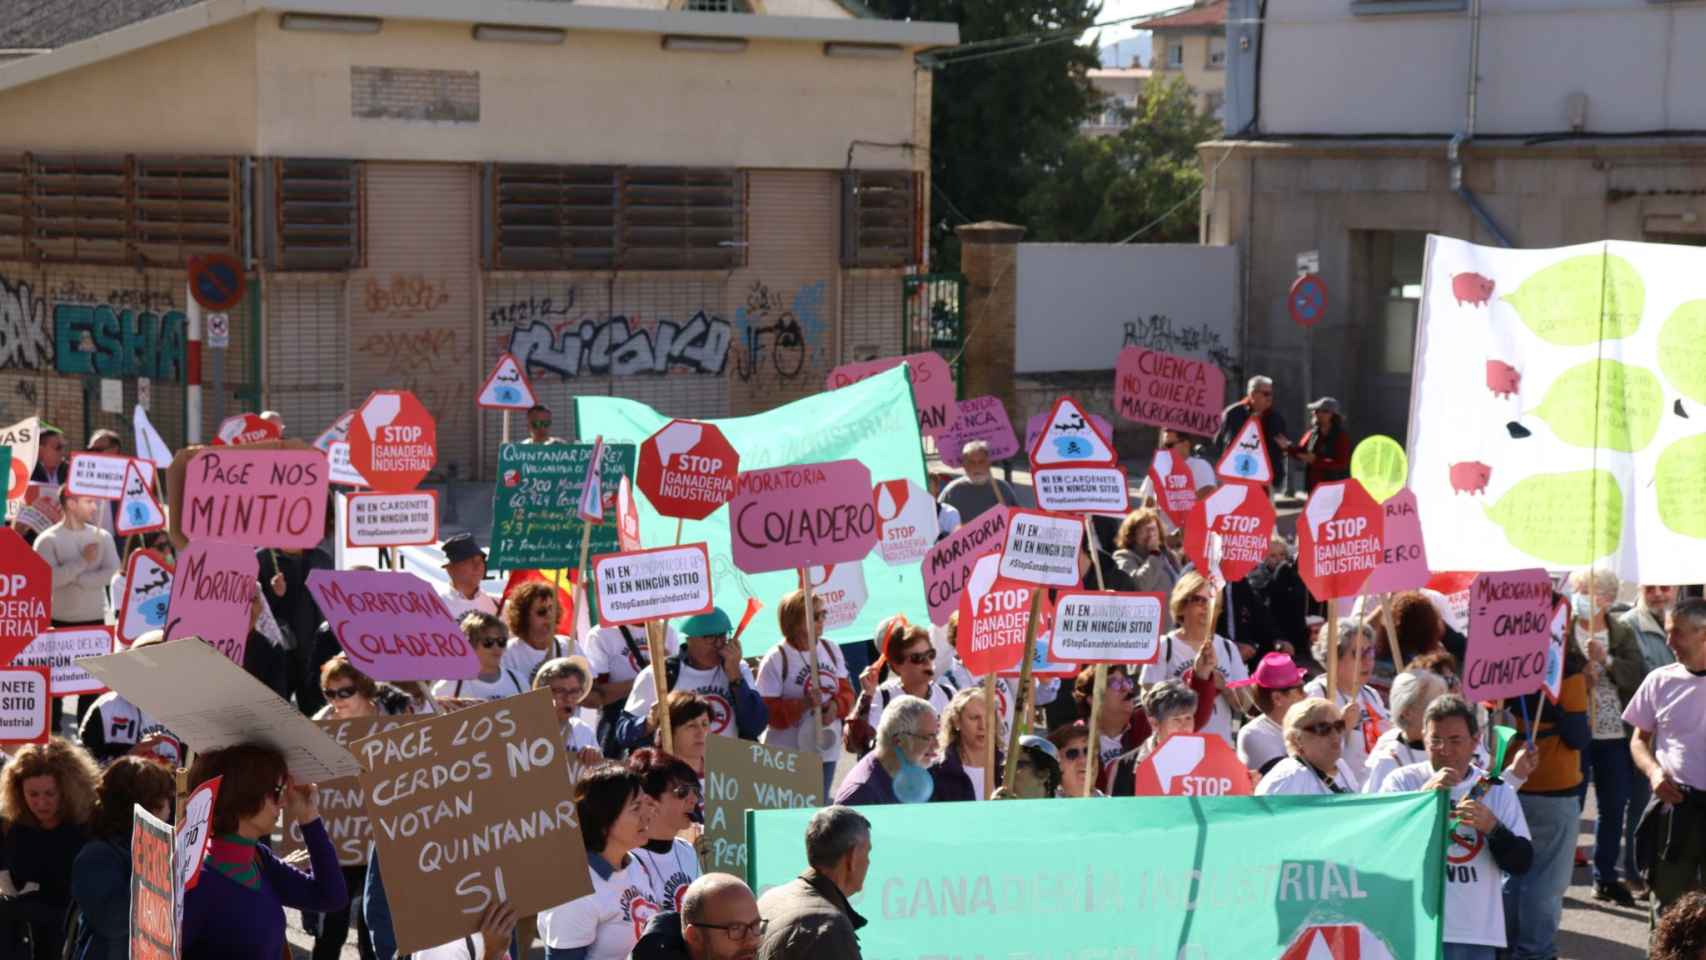 Una fotografía de la manifestación compartida por Podemos Cuenca en las redes sociales.